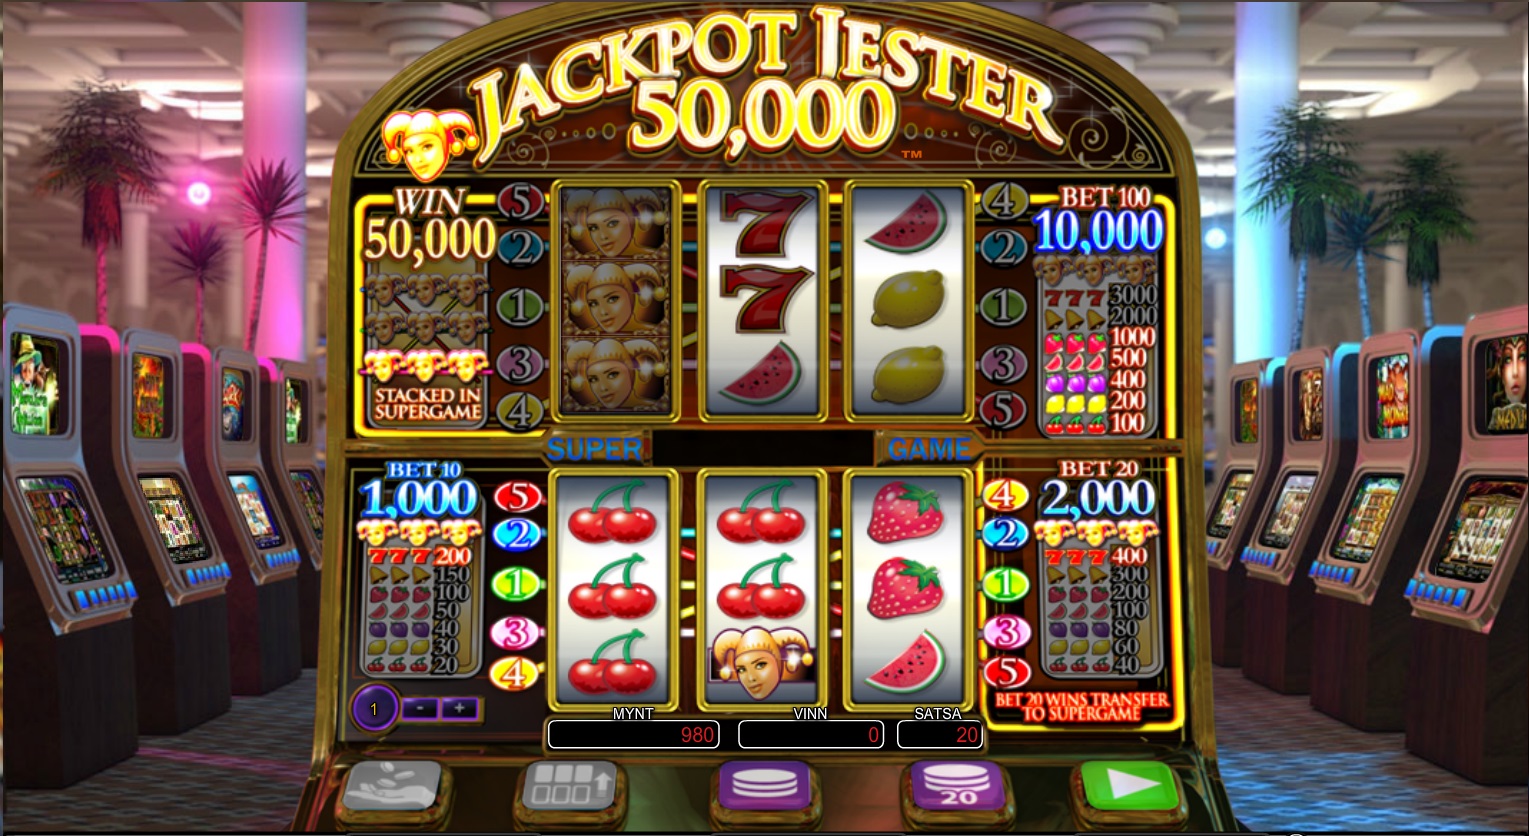 Vinna jackpot i vanliga casino Umarmen